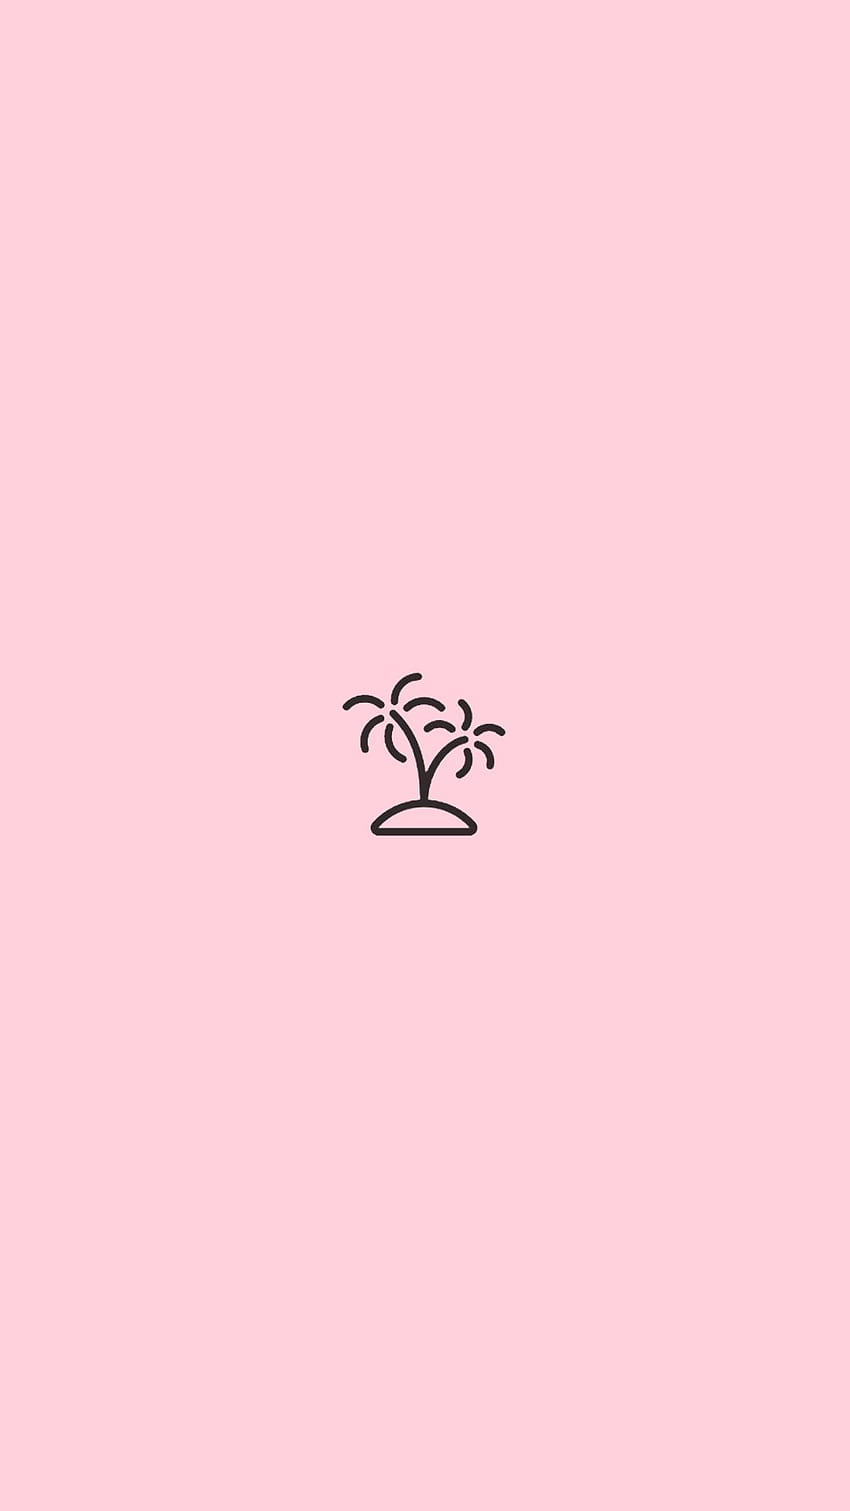 Summer Break 2019. Instagram rosa, iconos destacados de Instagram, rosa simple fondo de pantalla del teléfono